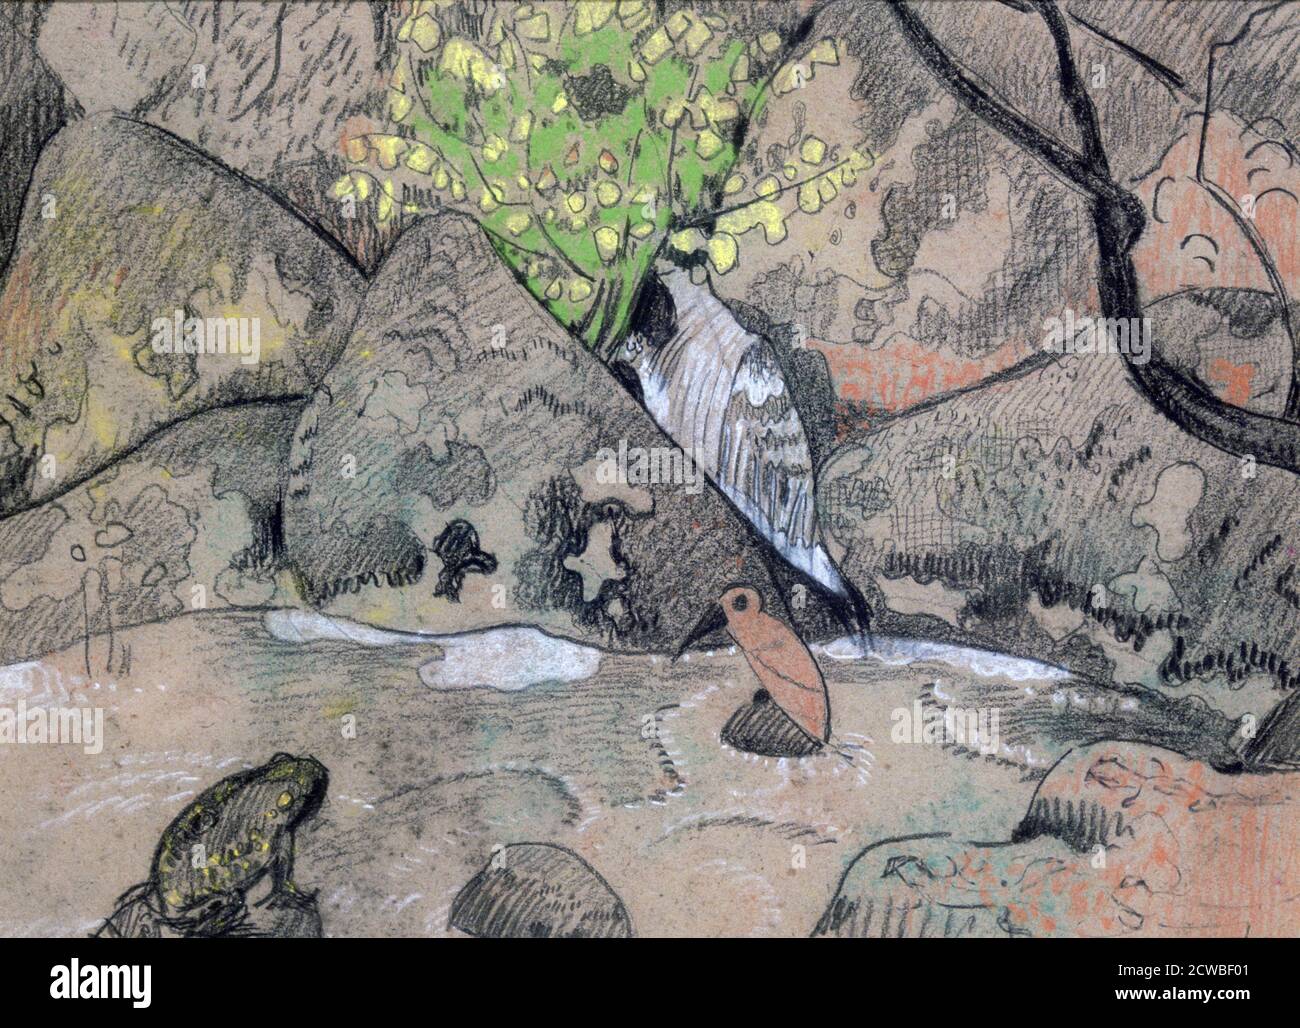 Landschaft mit einem Vogel und einer Kröte', c1883-1927. Künstler: Paul Serusier. Paul Serusier(1864-1927) war ein französischer Maler, der ein Pionier der abstrakten Kunst und eine Inspiration für die Avantgarde-Nabis-Bewegung war. Stockfoto